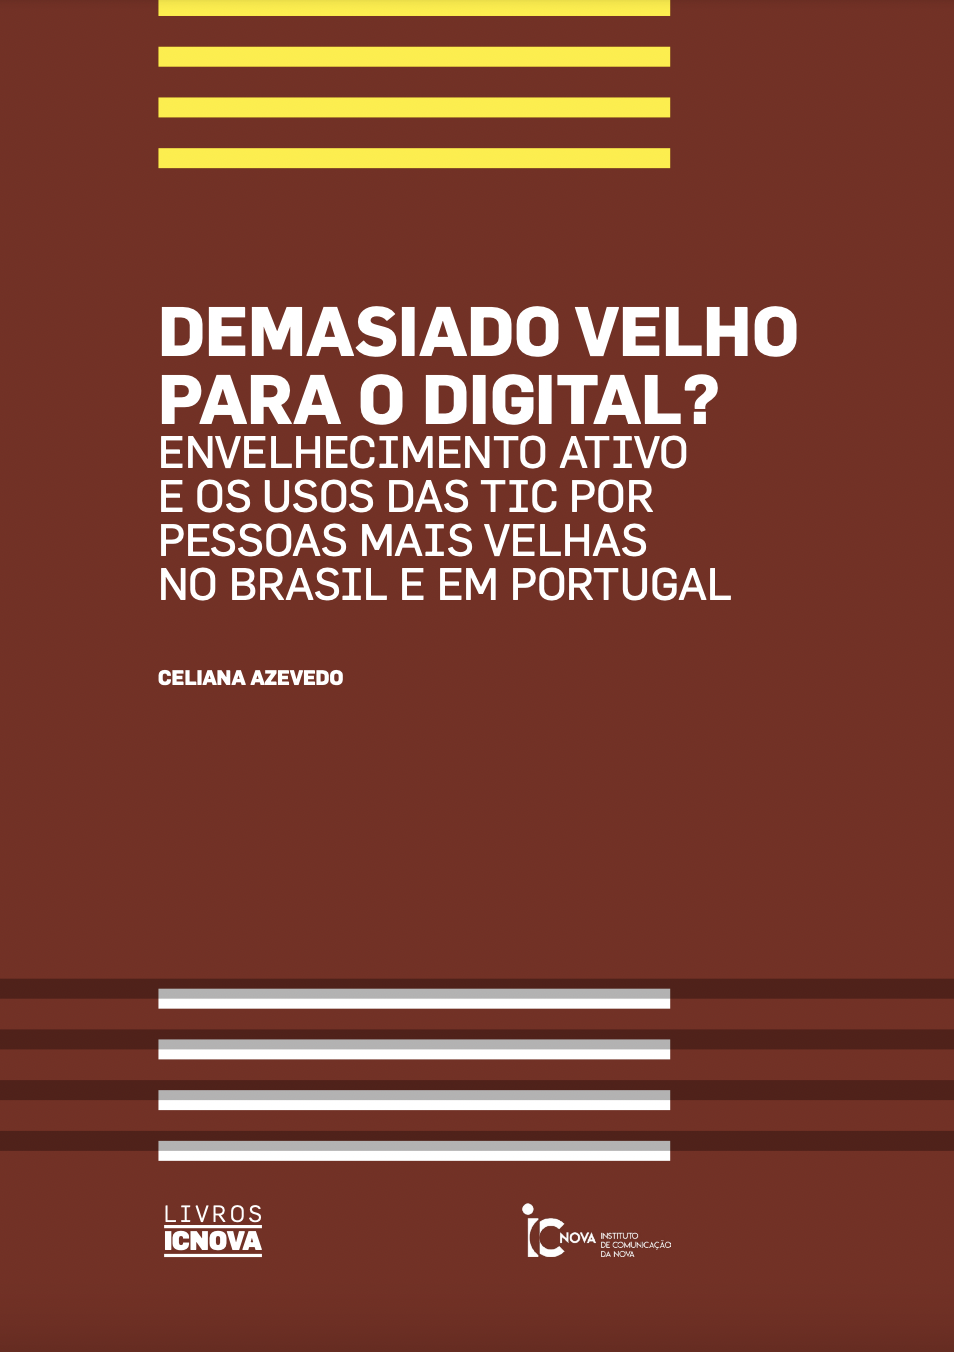 					Ver 2019: Demasiado velho para o digital? Envelhecimento ativo e os usos das TIC por pessoas mais velhas no Brasil e em Portugal
				